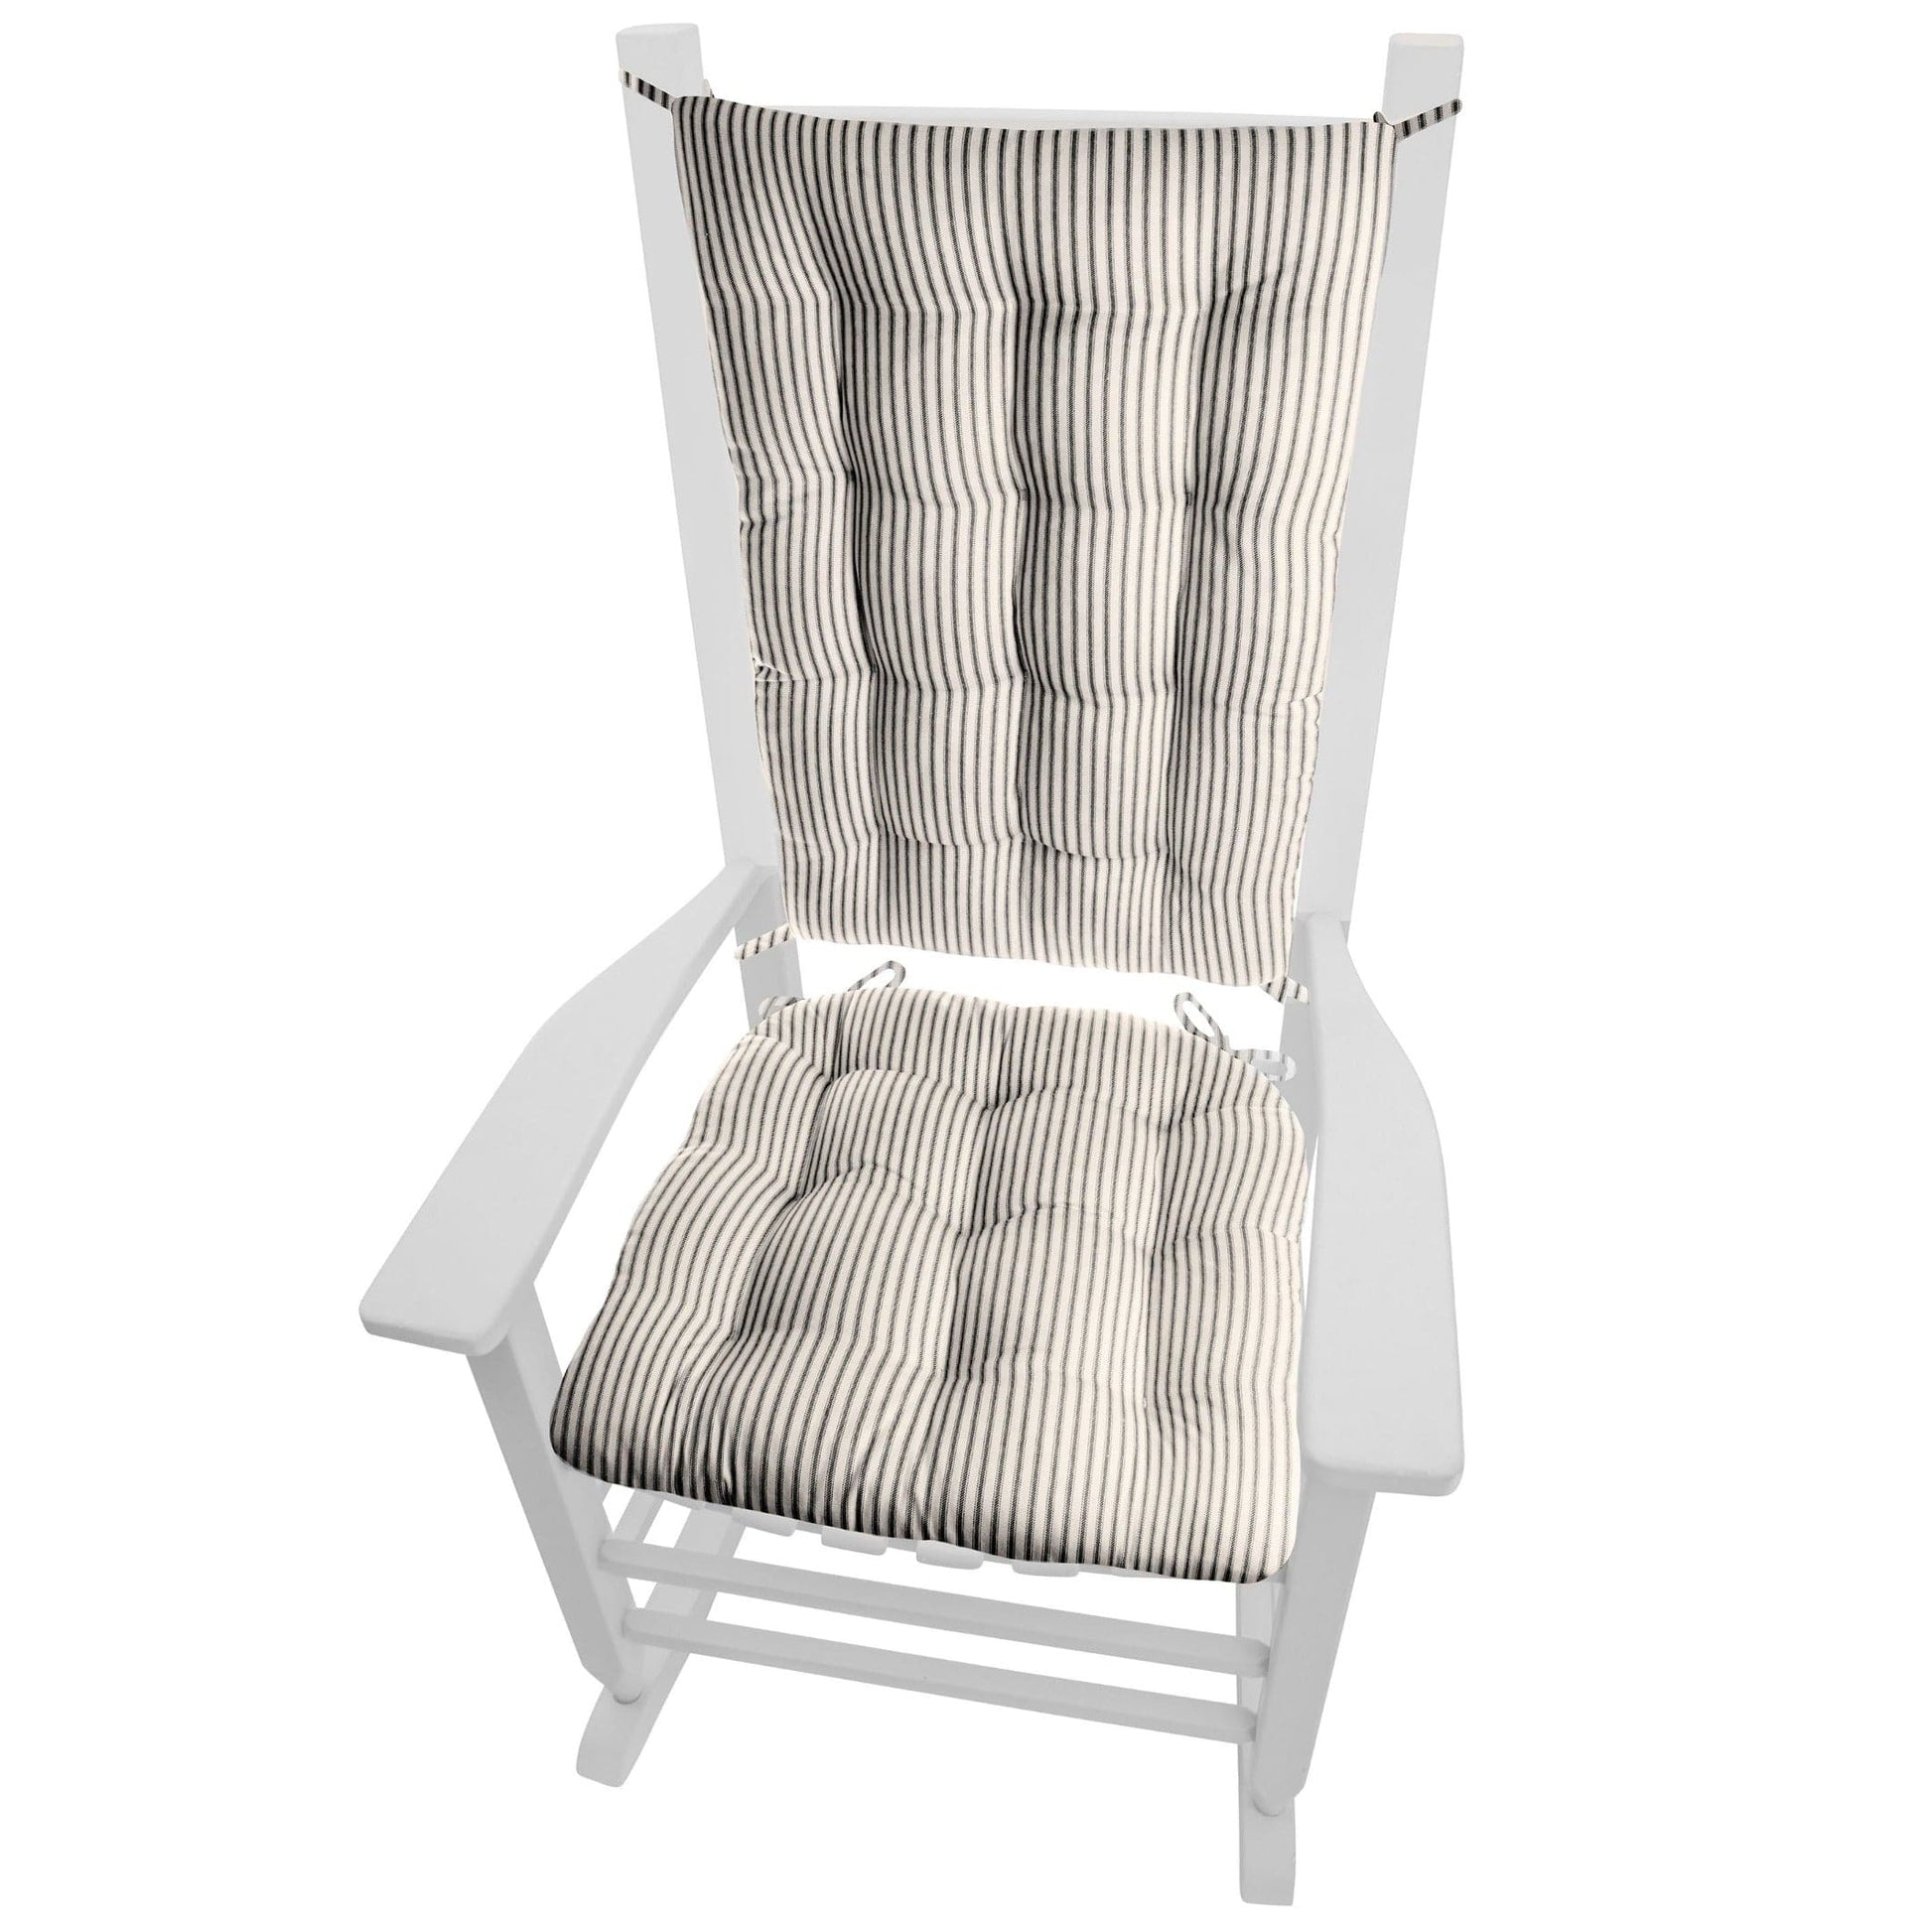 Barnett Home Decor Tolix Chair Pad, Farmhouse Check Black, Metal Chair  Cushions, 14x14 Chair Cushions, Latex Foam Fill Small Seat Cushion with  Ties